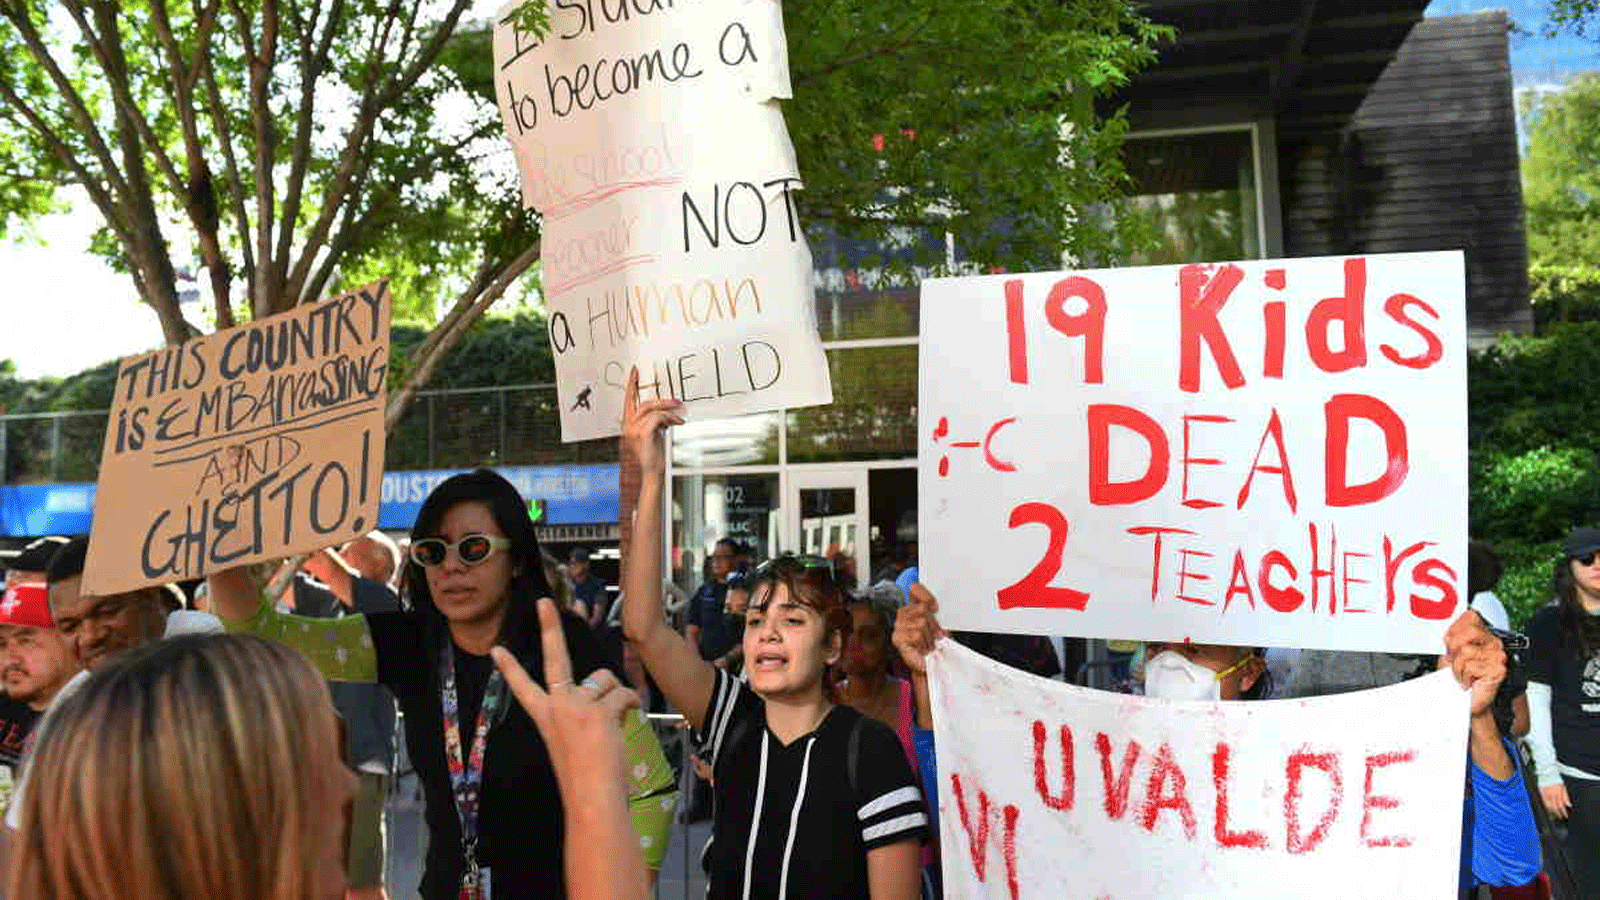 مواطنون يحملون لافتات أثناء ضد السلاح أثناء احتجاجهم خارج الاجتماع السنوي لجمعية البندقية الوطنية في مركز مؤتمرات جورج آر براون، في هيوستن، تكساس.27 أيار\مايو 2022.